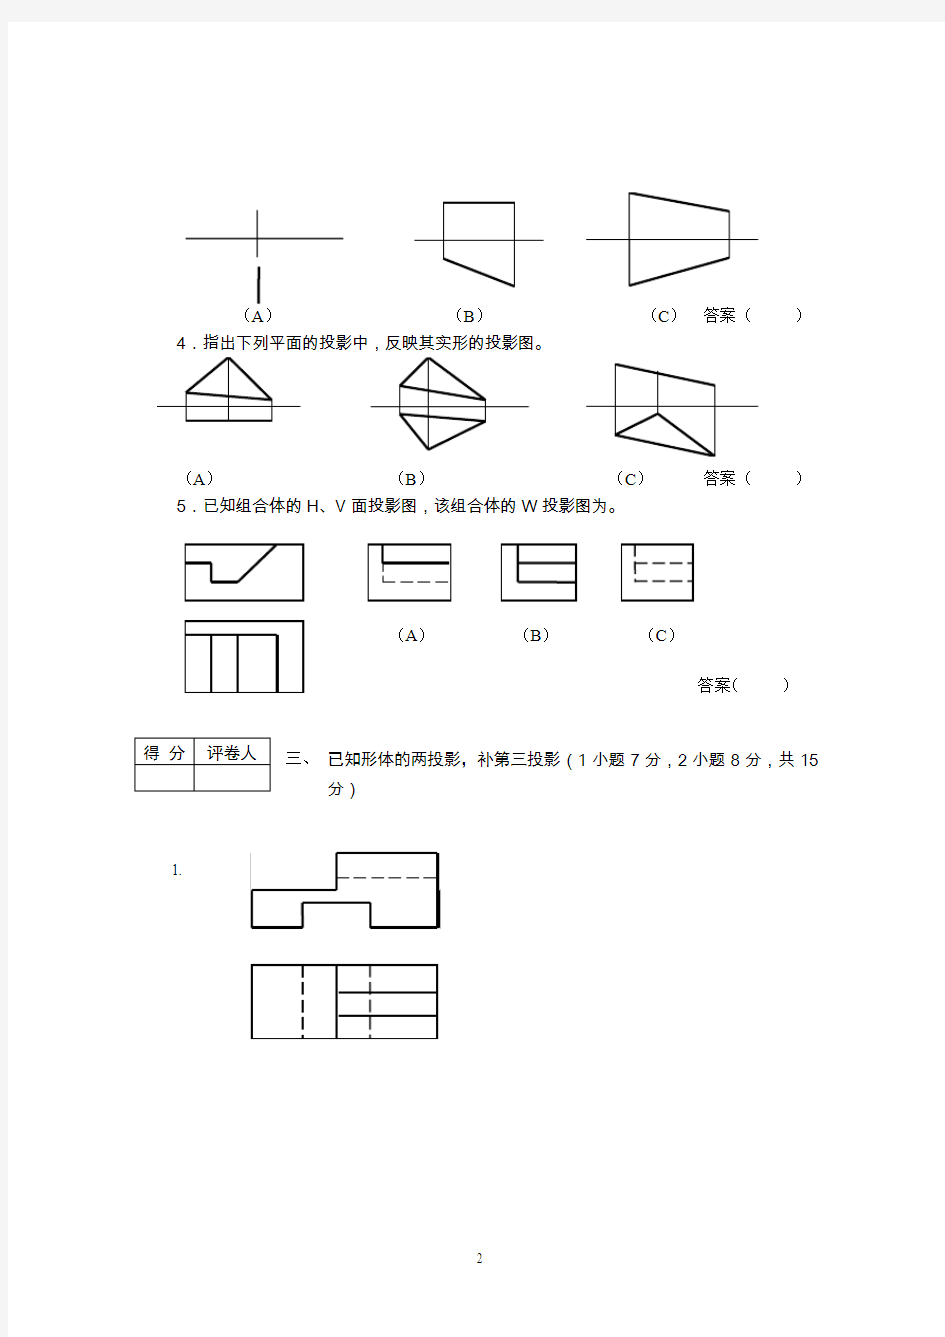 四川省2007年高职班对口招生考试建筑类样题(含答案)